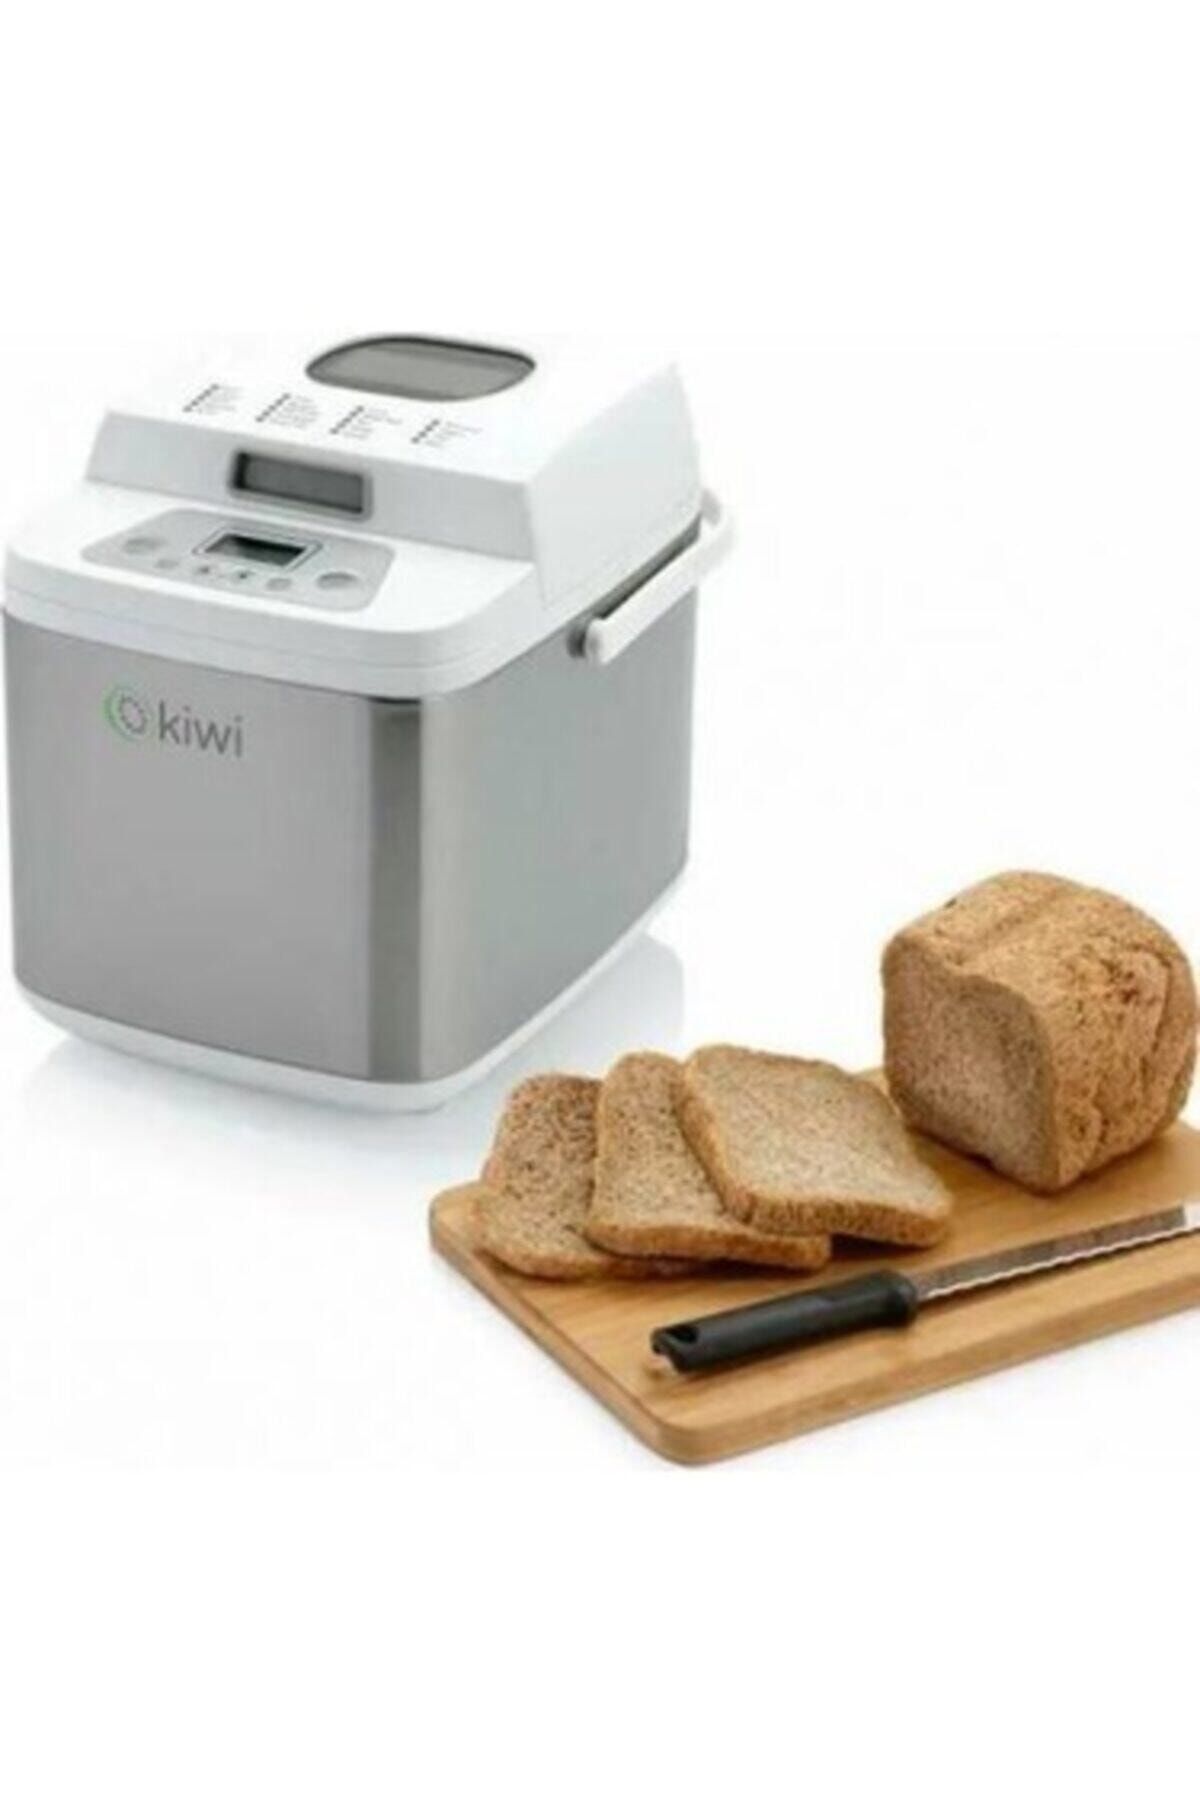 Kiwi Beyaz Çok Fonksiyonlu Ekmek Yapma Makinesi Kmc 6955